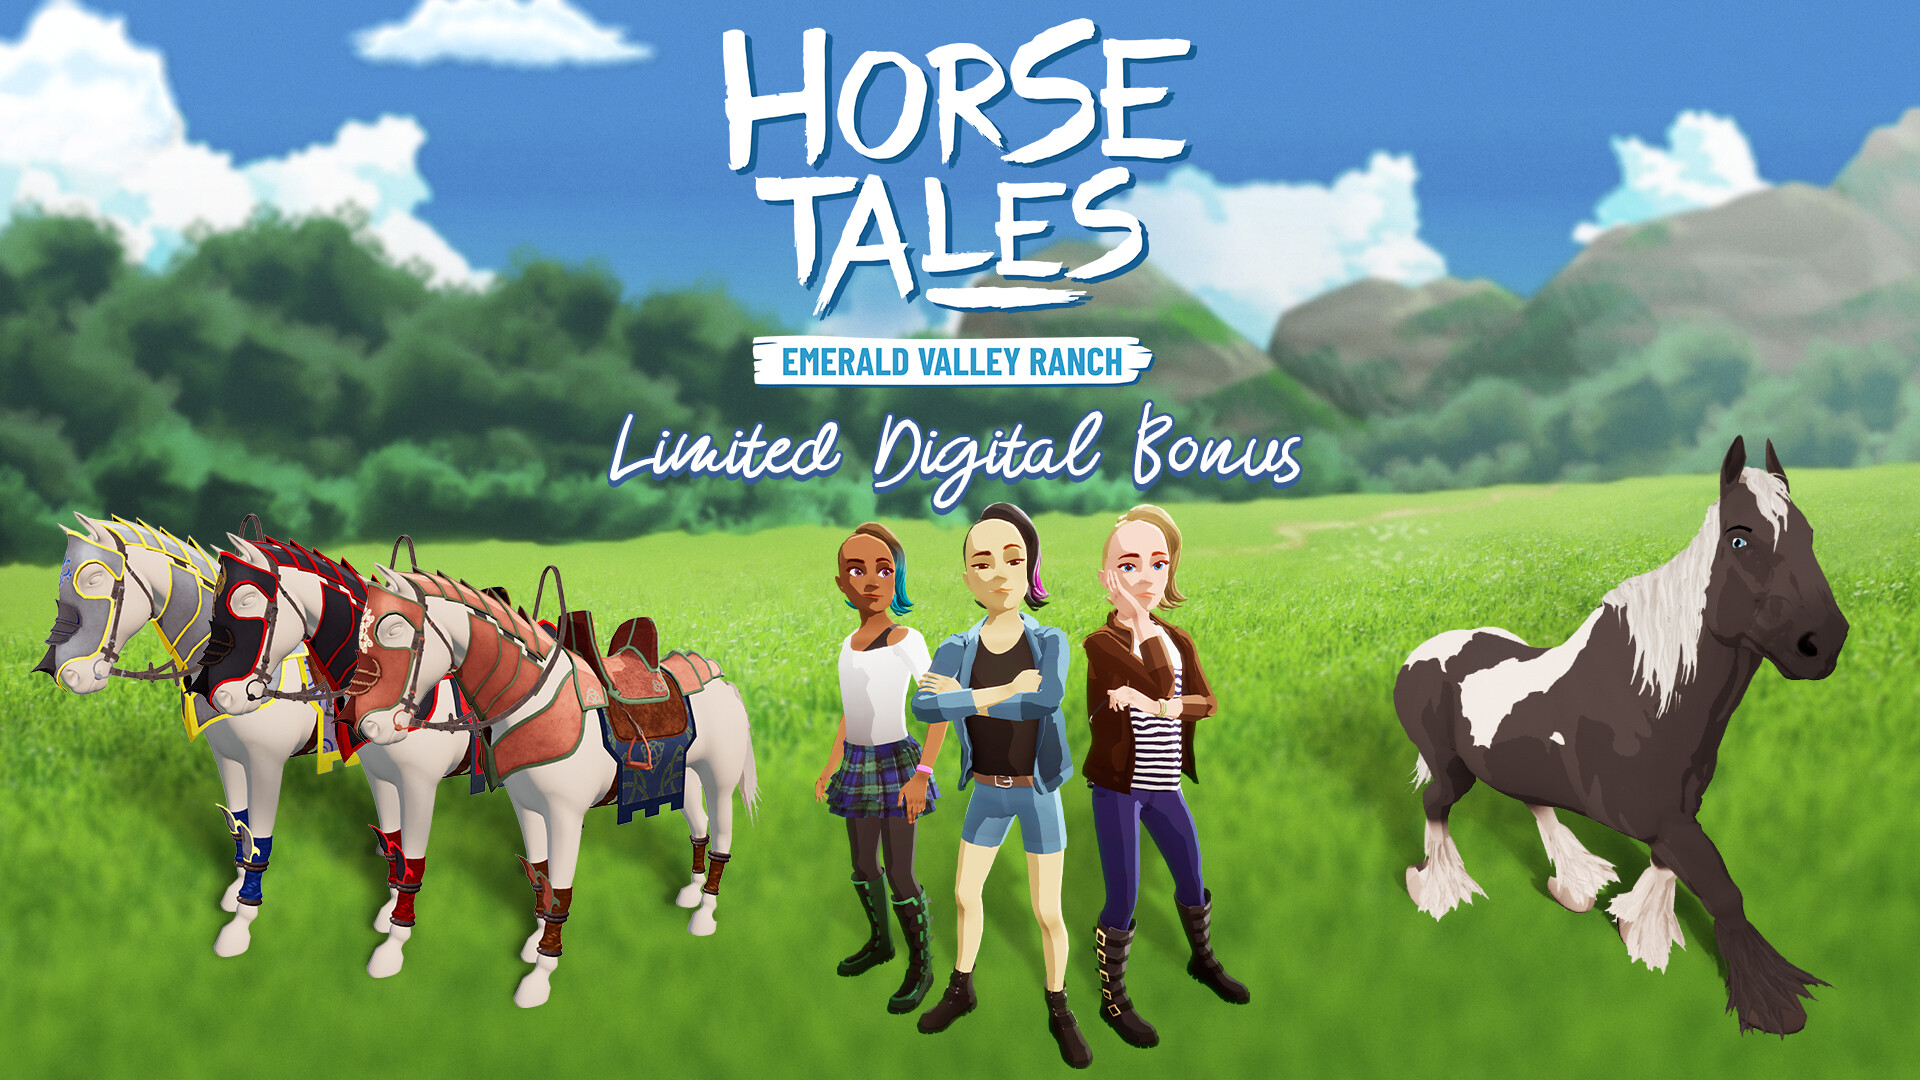 Horse Tales: Emerald Valley Ranch - Limited Digital Bonus DLC EU PS4 CD Key, 3.38$